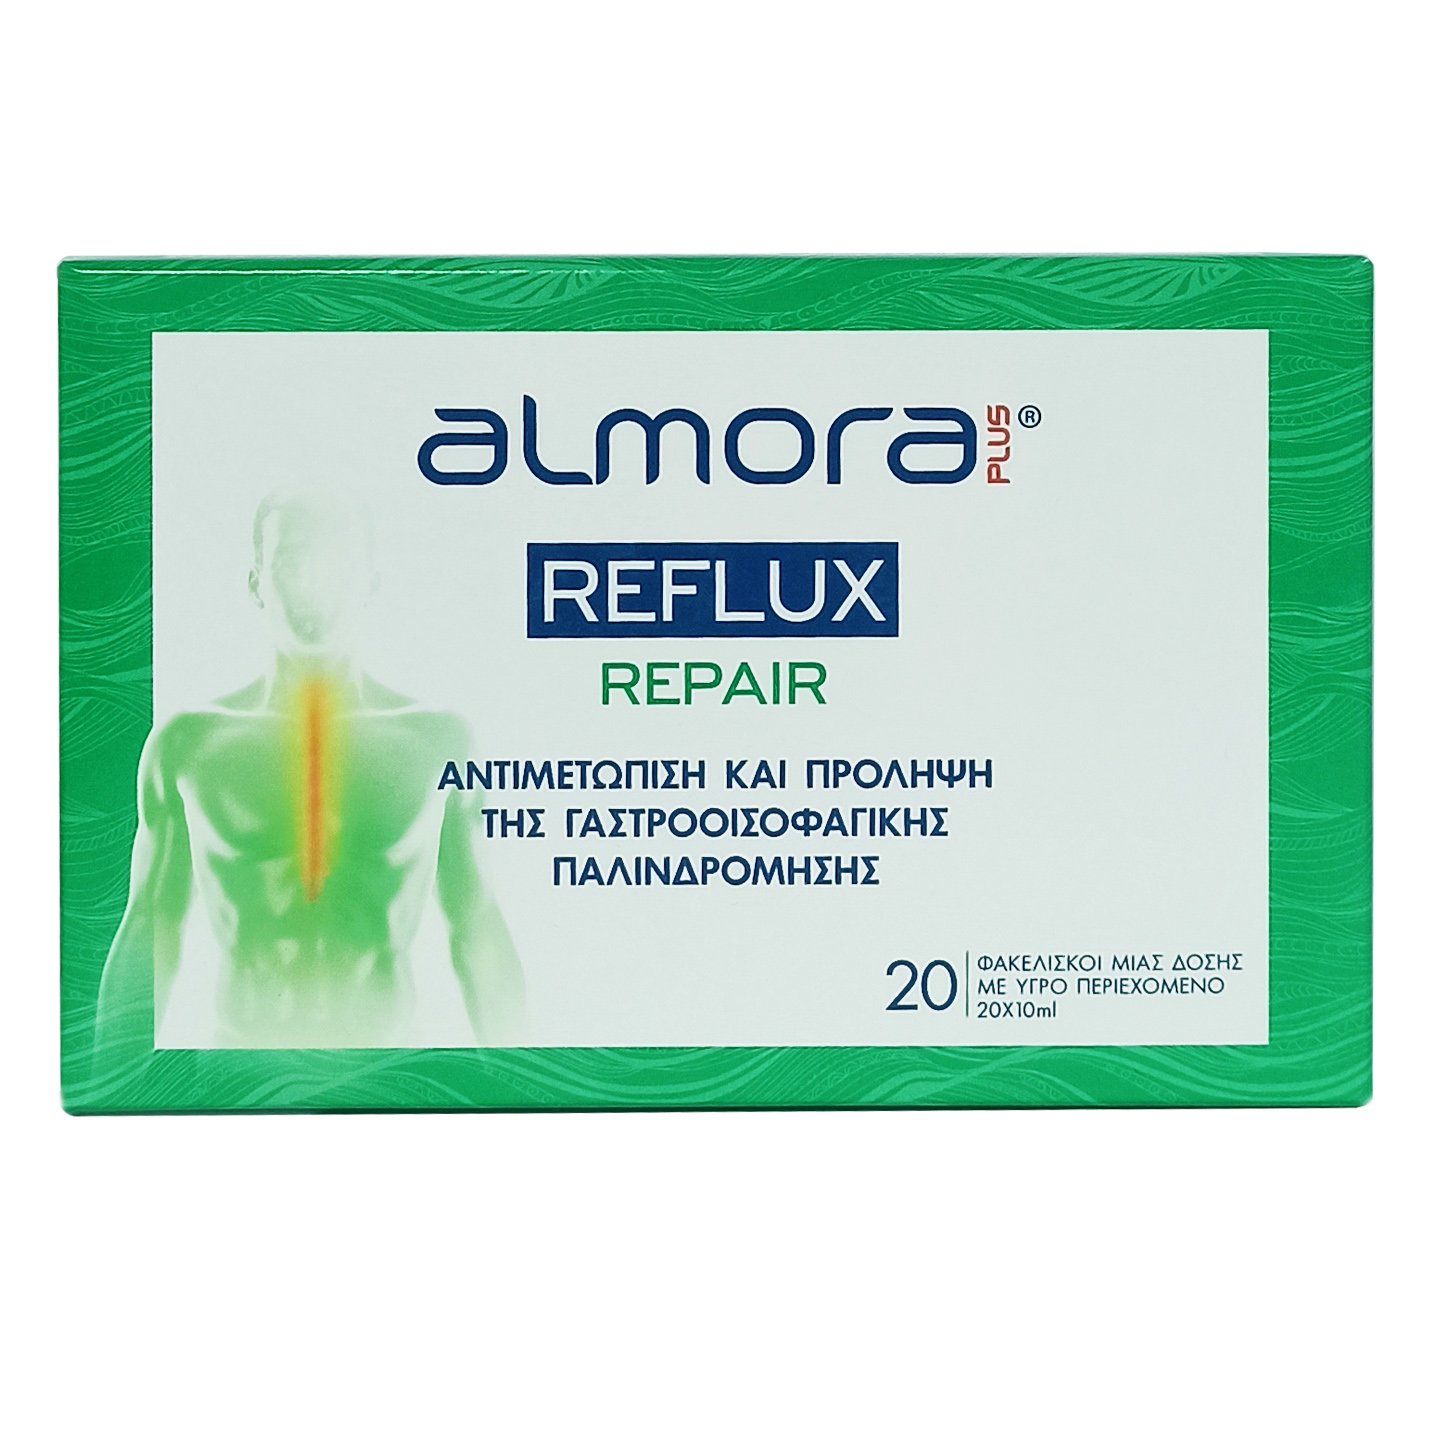 Almora Plus Reflux Repair για την Αντιμετώπιση & Πρόληψη της Γαστροοισοφαγικής Παλινδρόμησης, 20 Φακελάκια x 10ml 42930